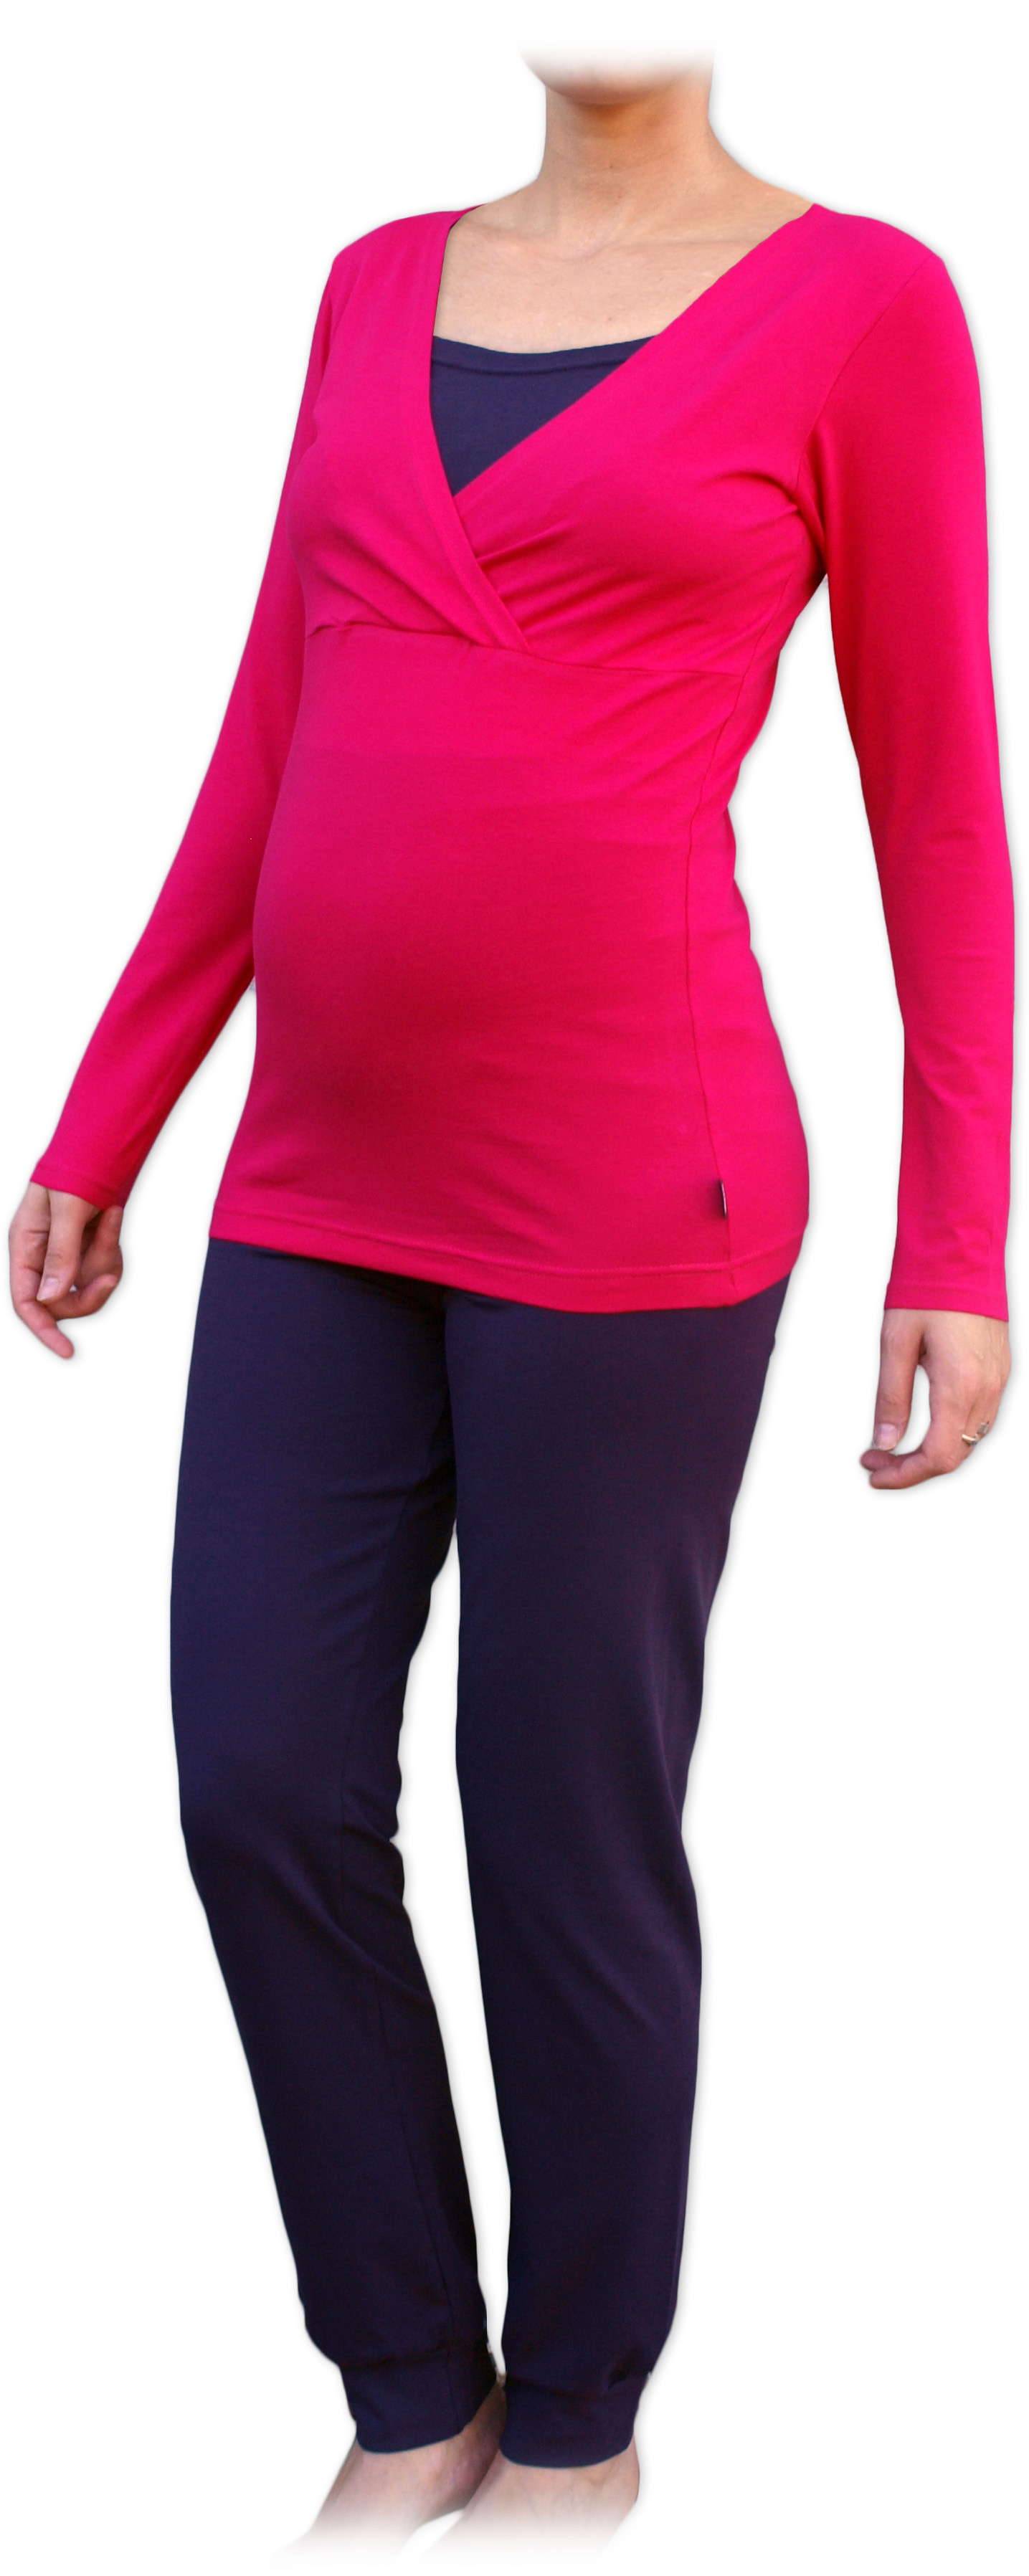 Tehotenské a dojčiace pyžamo, dlhé, sýto ružovej + slivka